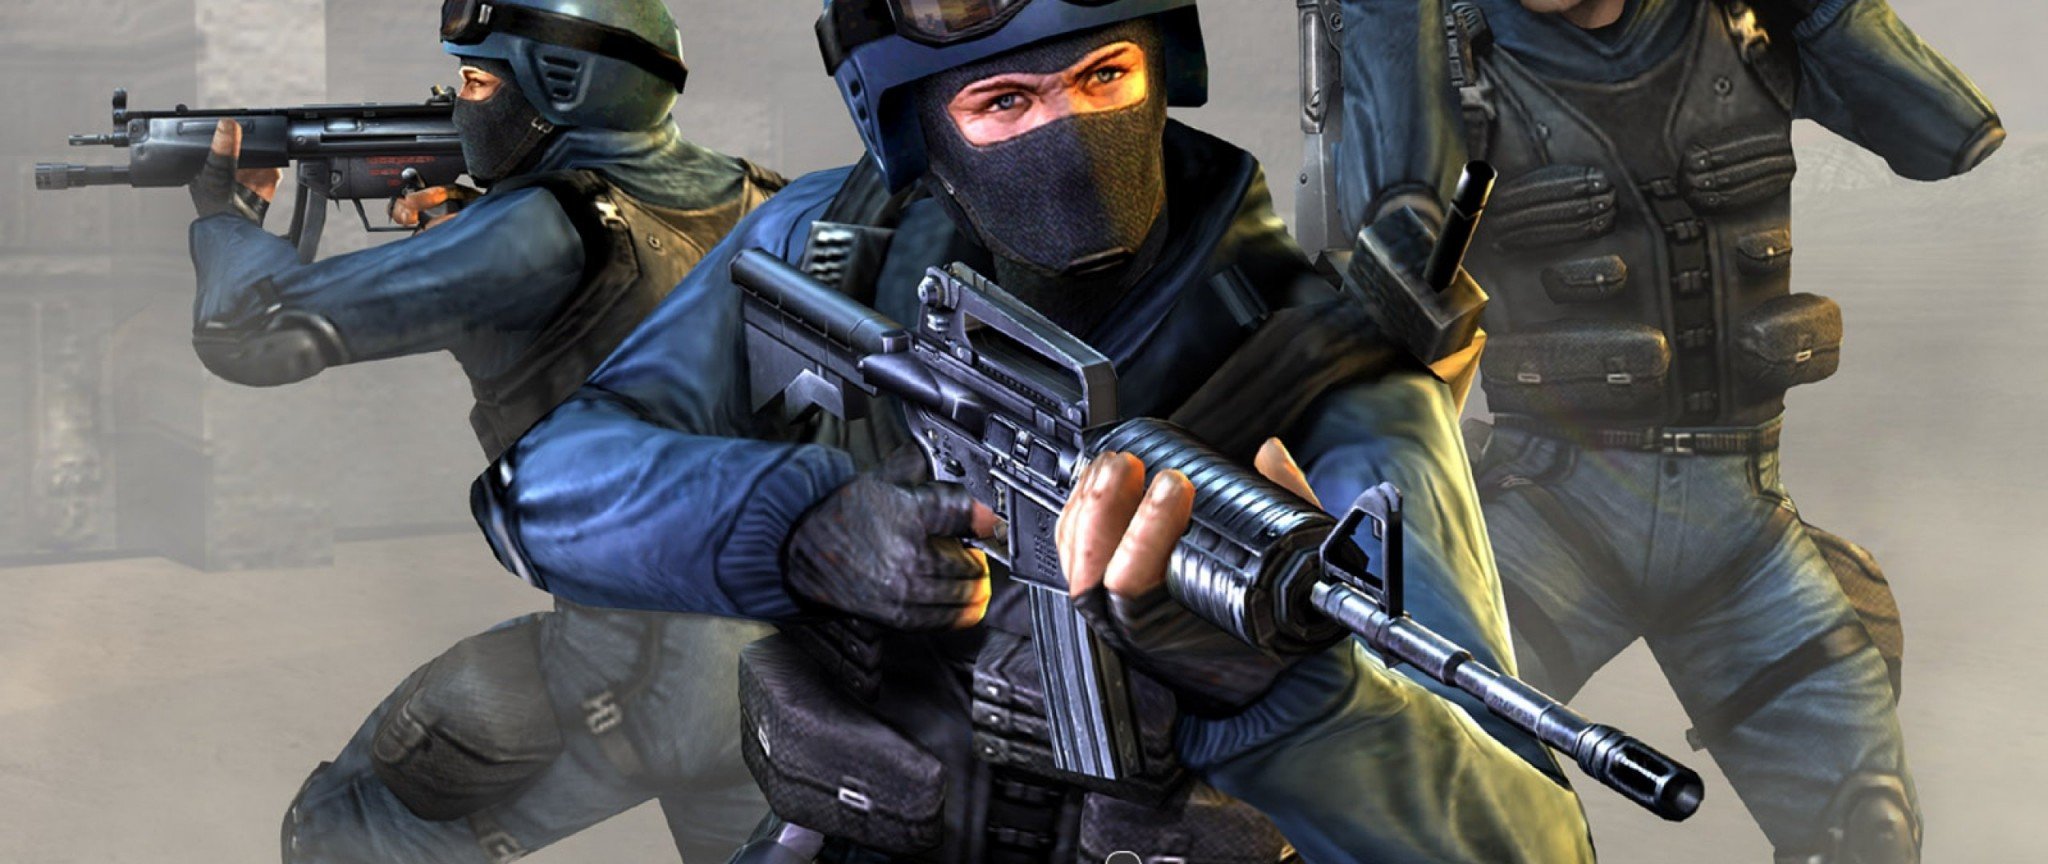 Counter-Strike Condition Zero Deleted Scenes #12 | Rise Hard